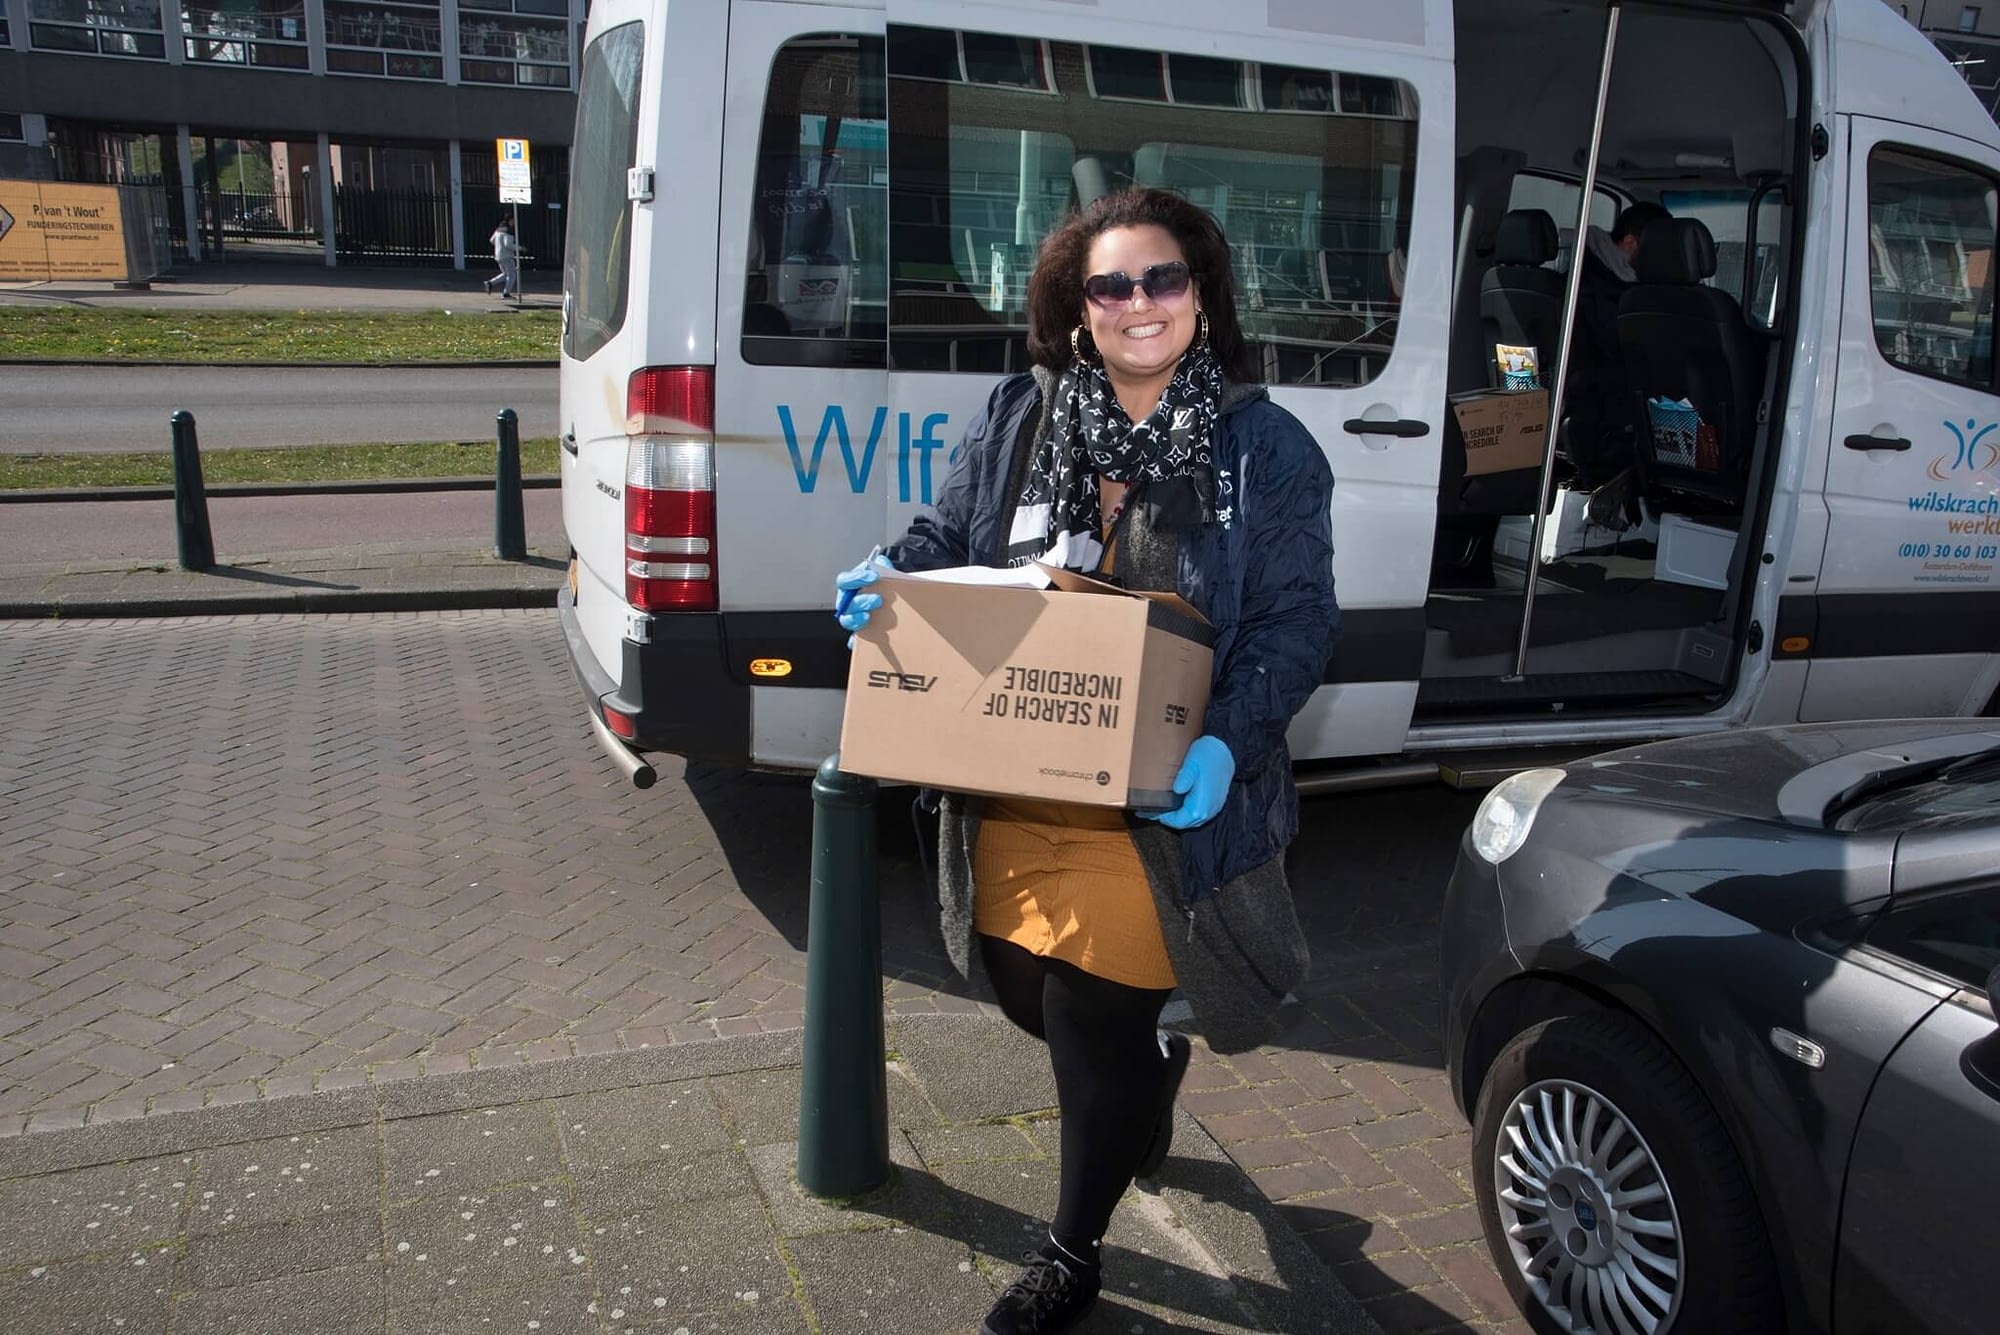 Een vrijwilliger uit Delfshaven helpt mee met uitdelen van voedselpakketten